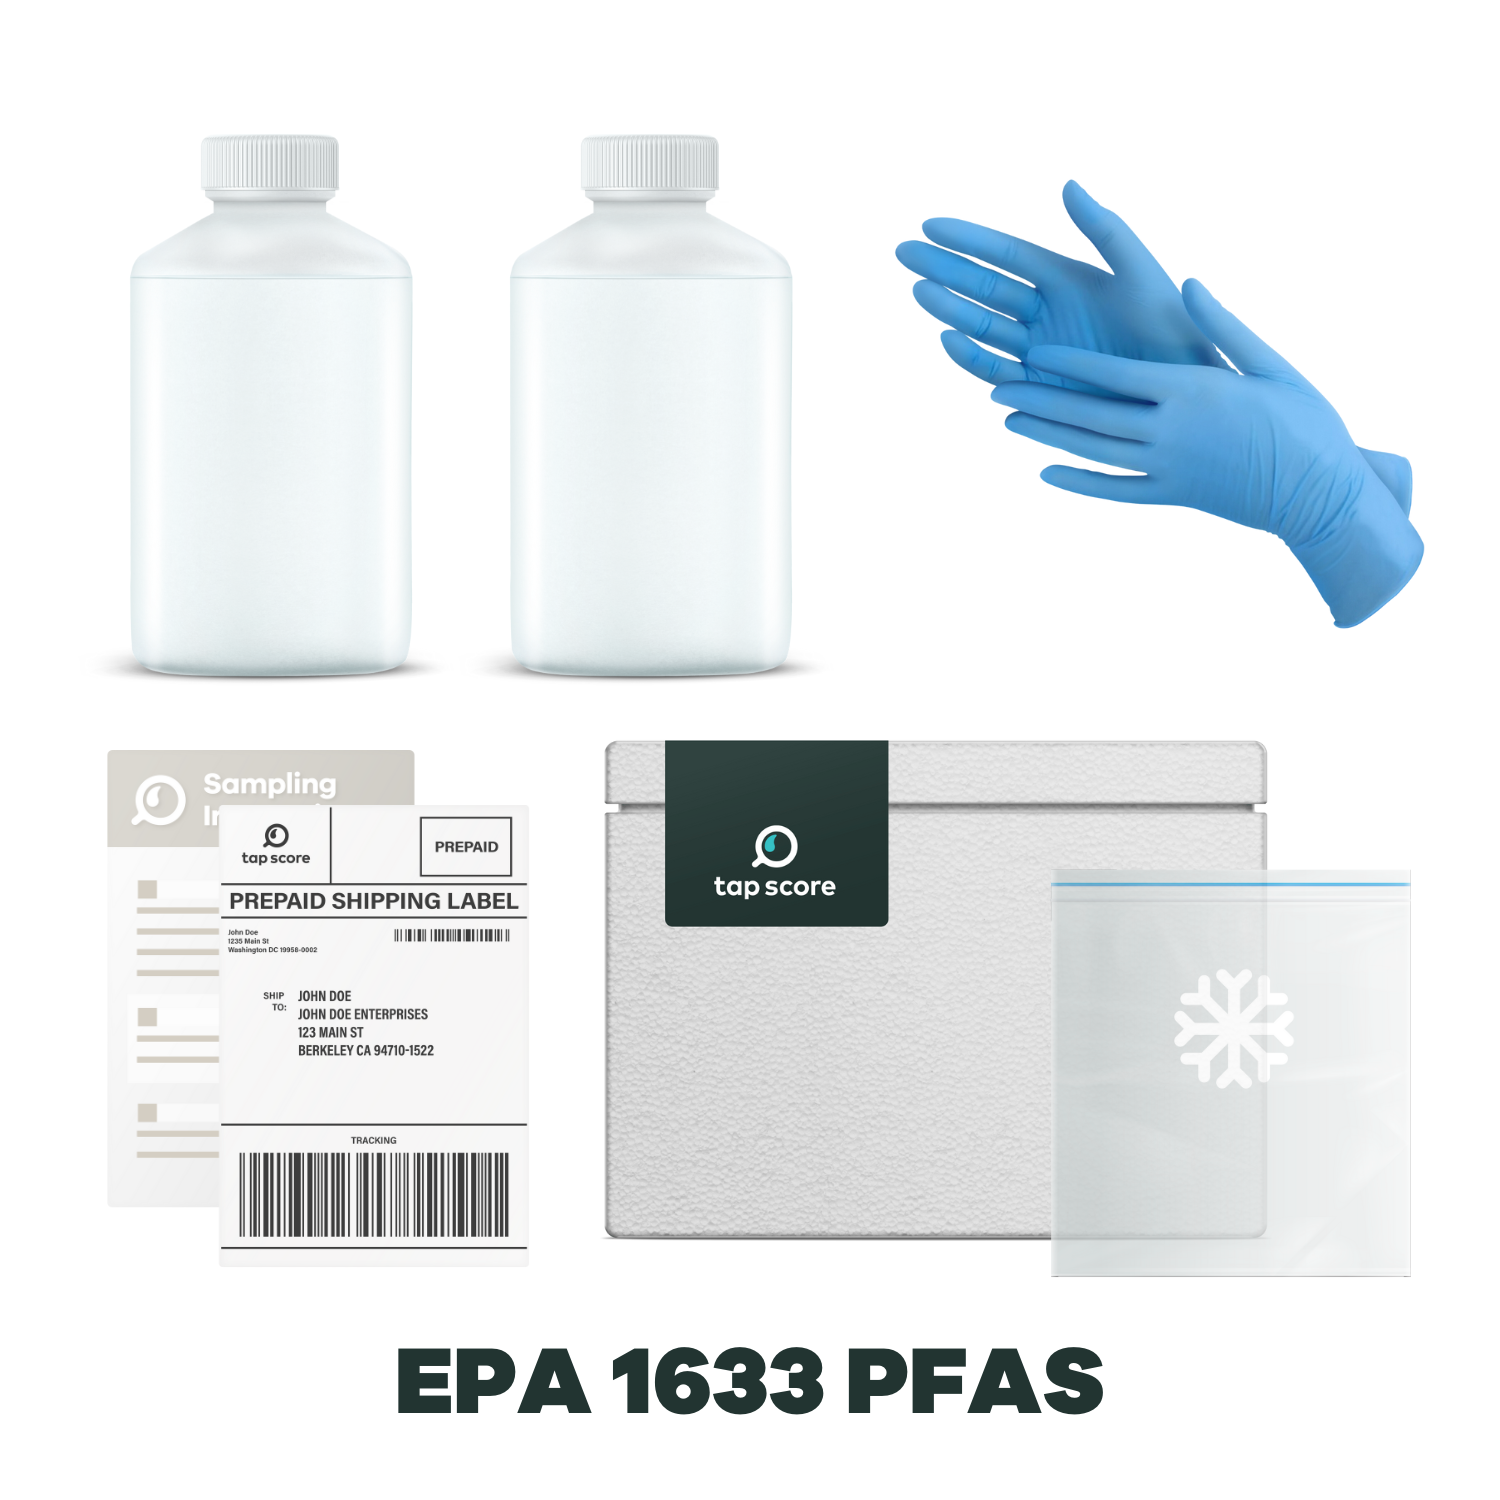 EPA 1633 PFAS Test Sampling Materials